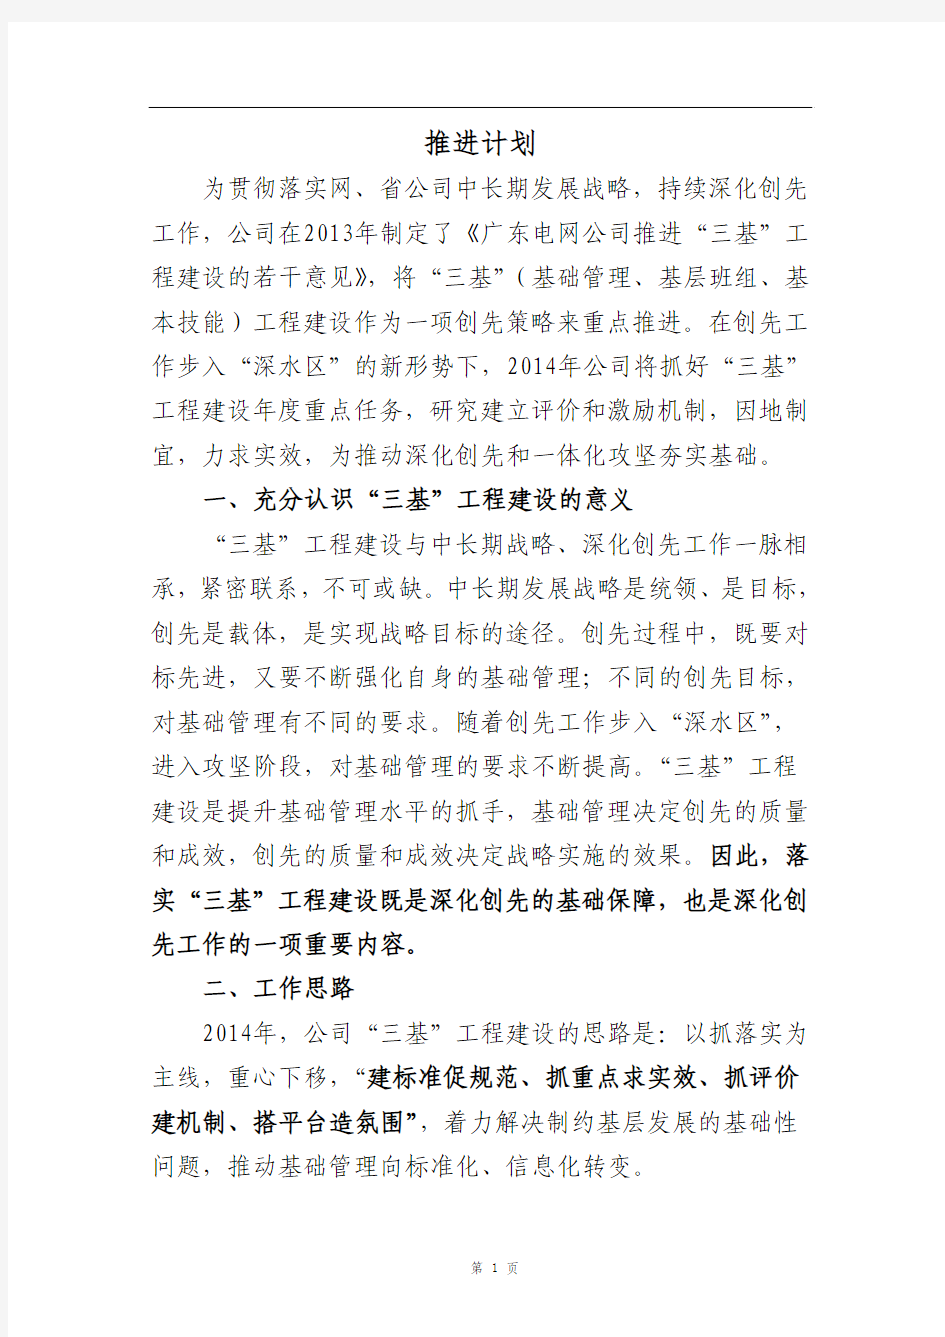 广东电网公司2014年“三基”工程建设推进计划